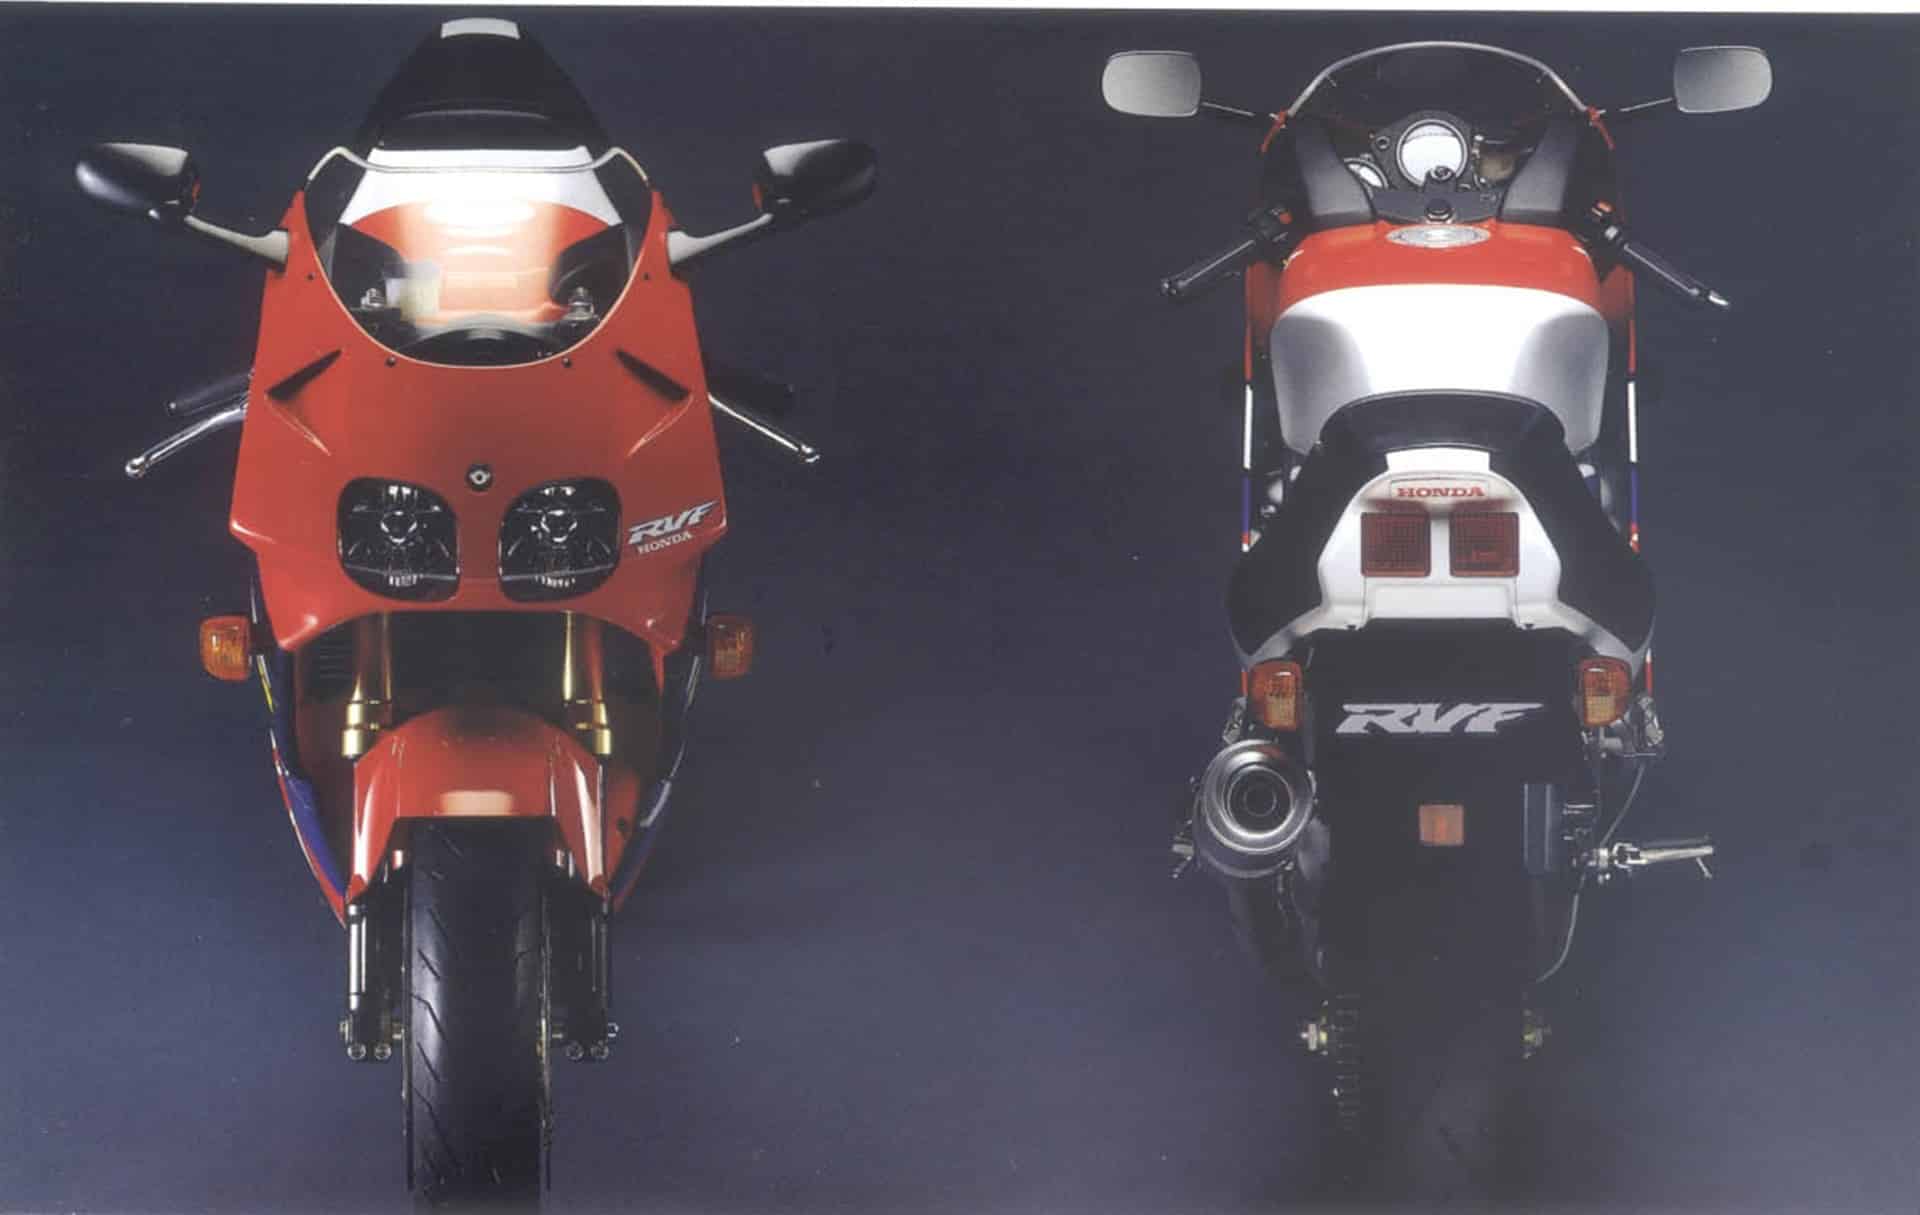 Motor V4 de Honda: "El poder de los sueños"